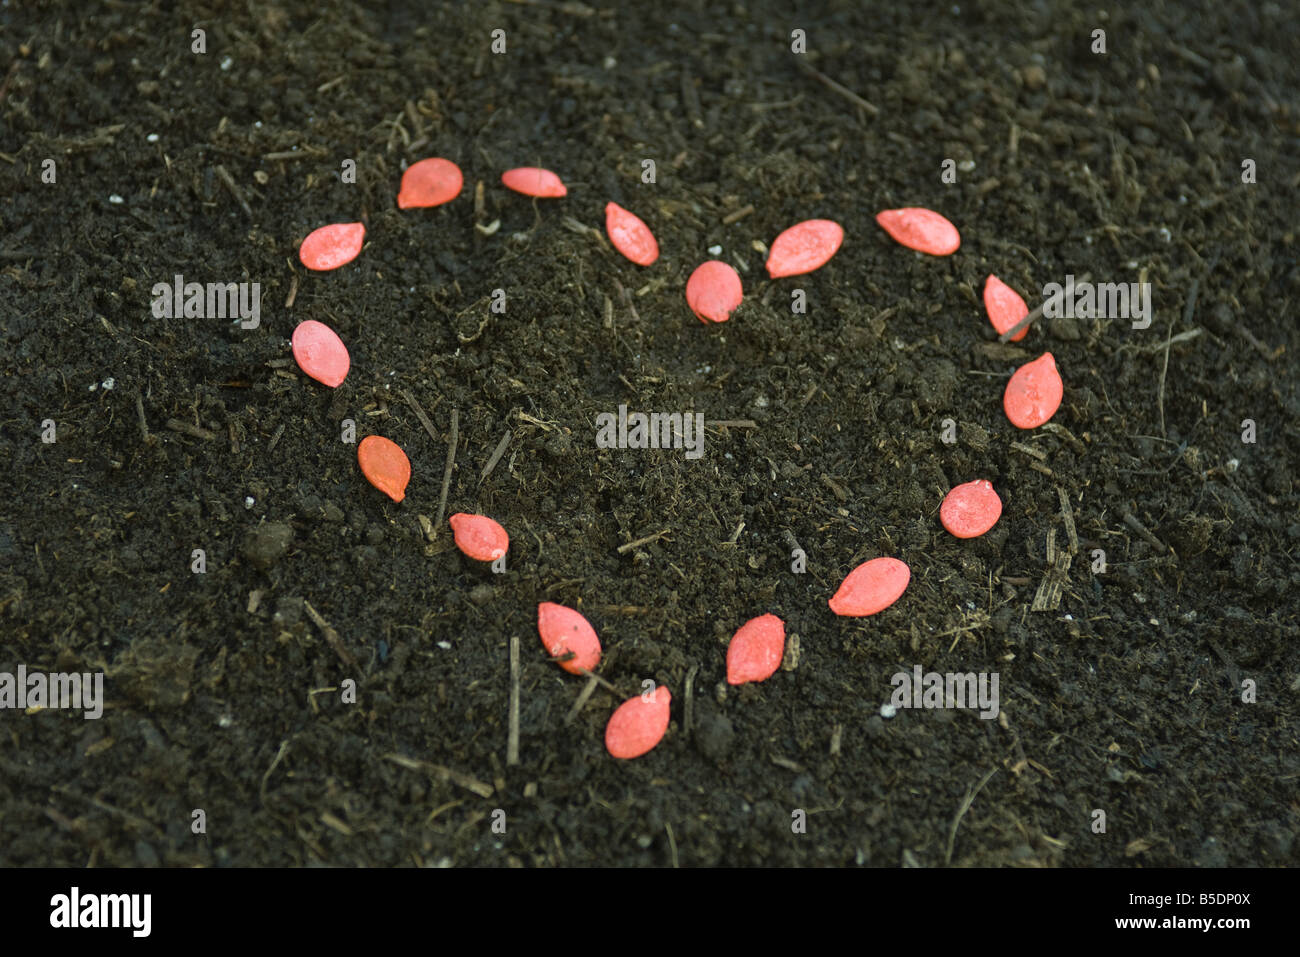 Graines rouges disposées en forme de coeur sur le sol Banque D'Images